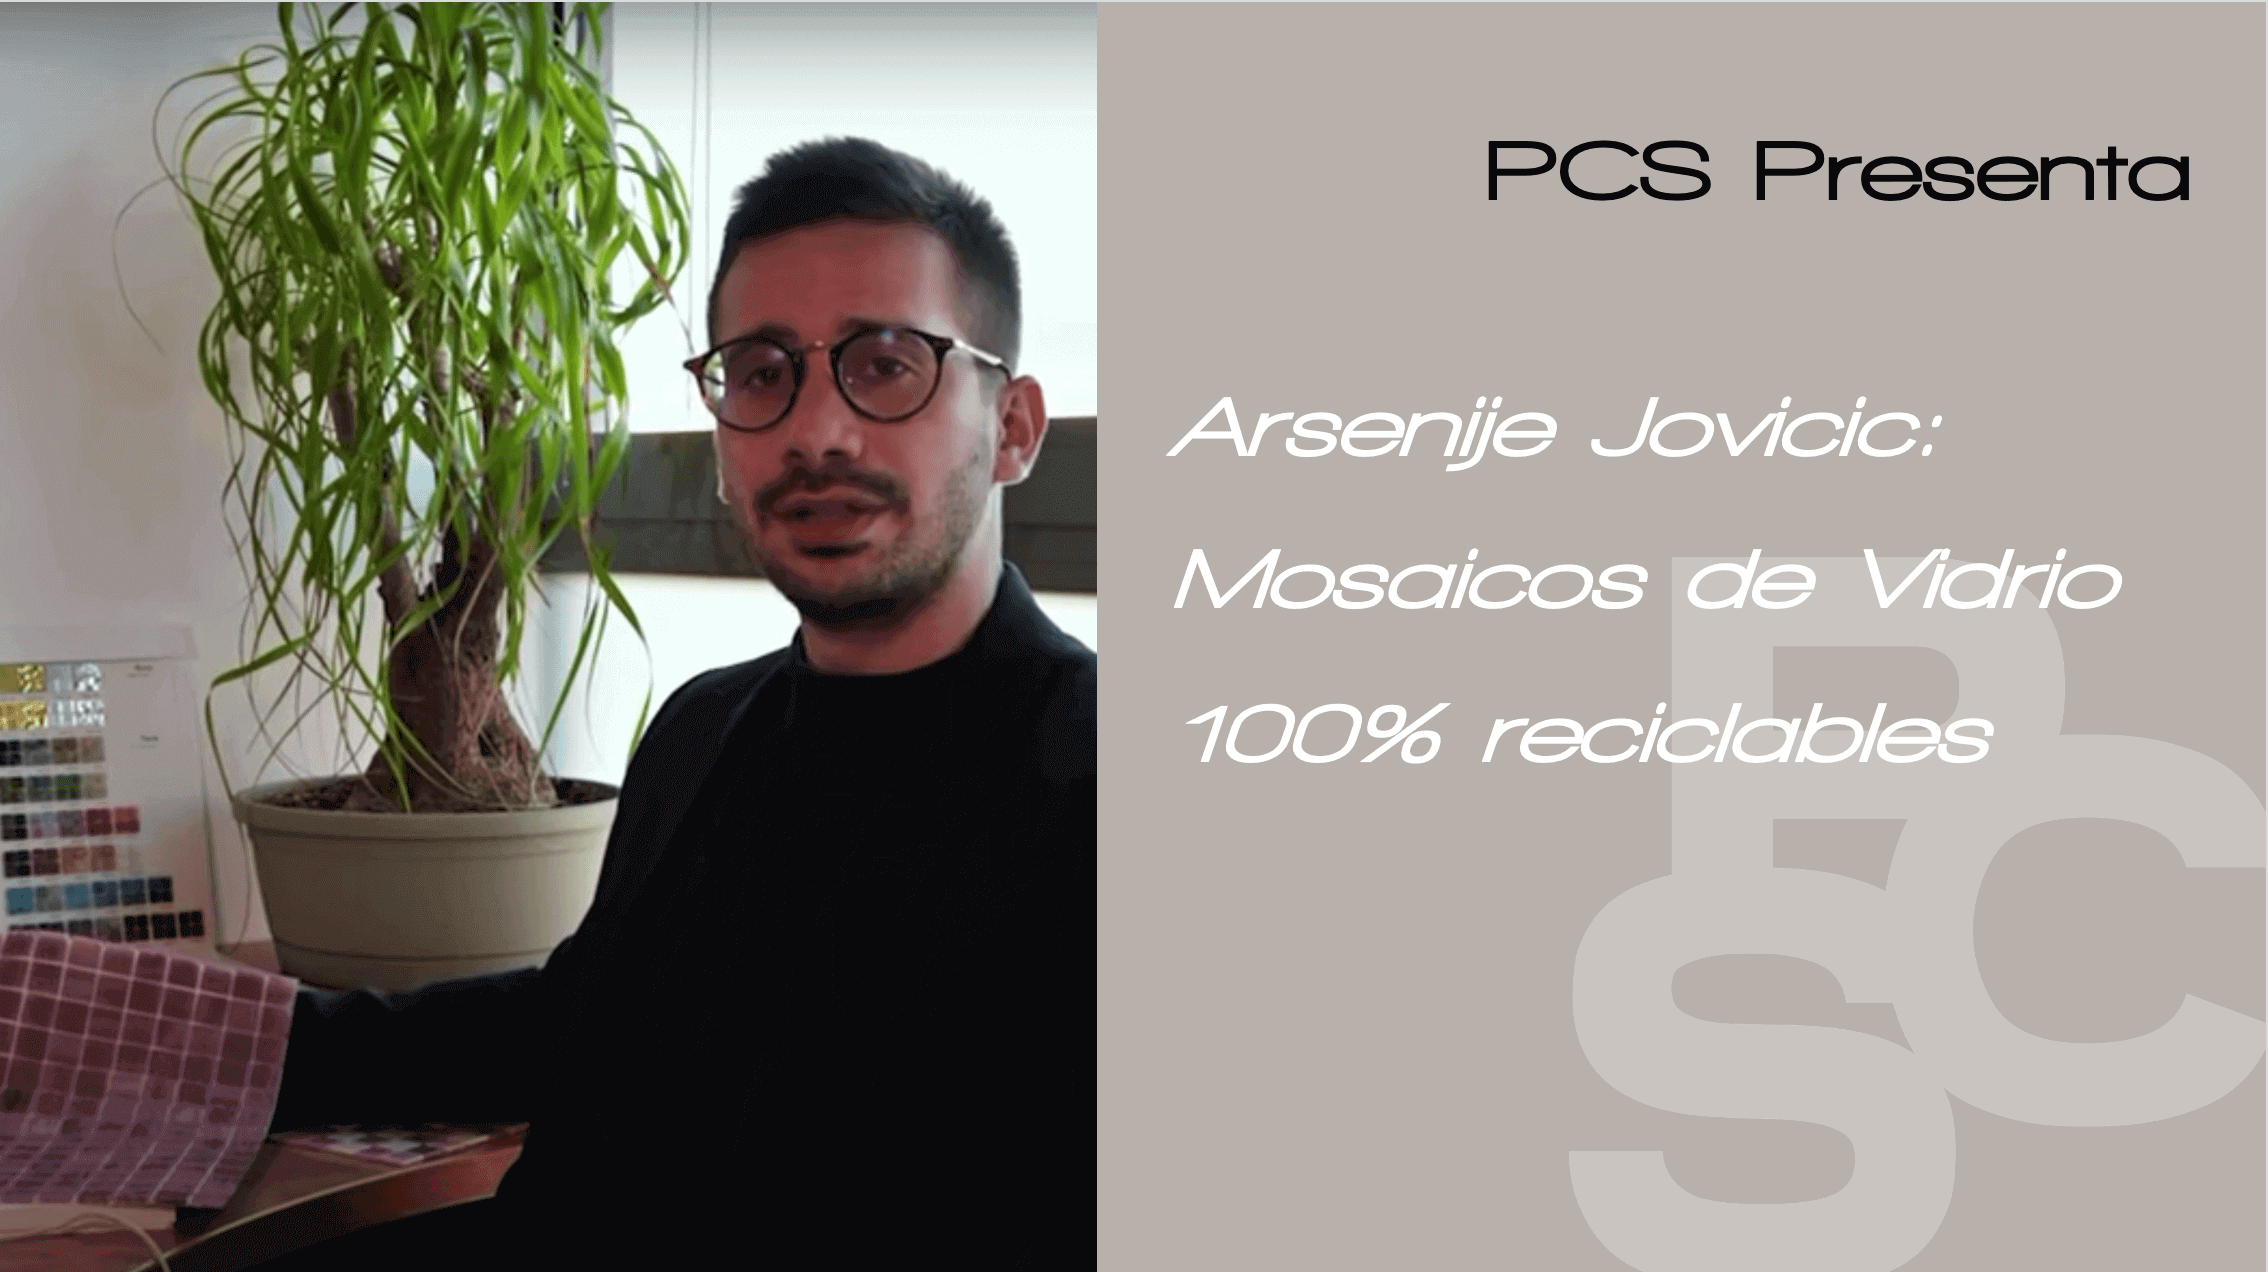 Arsenije Jovicic mosaicos